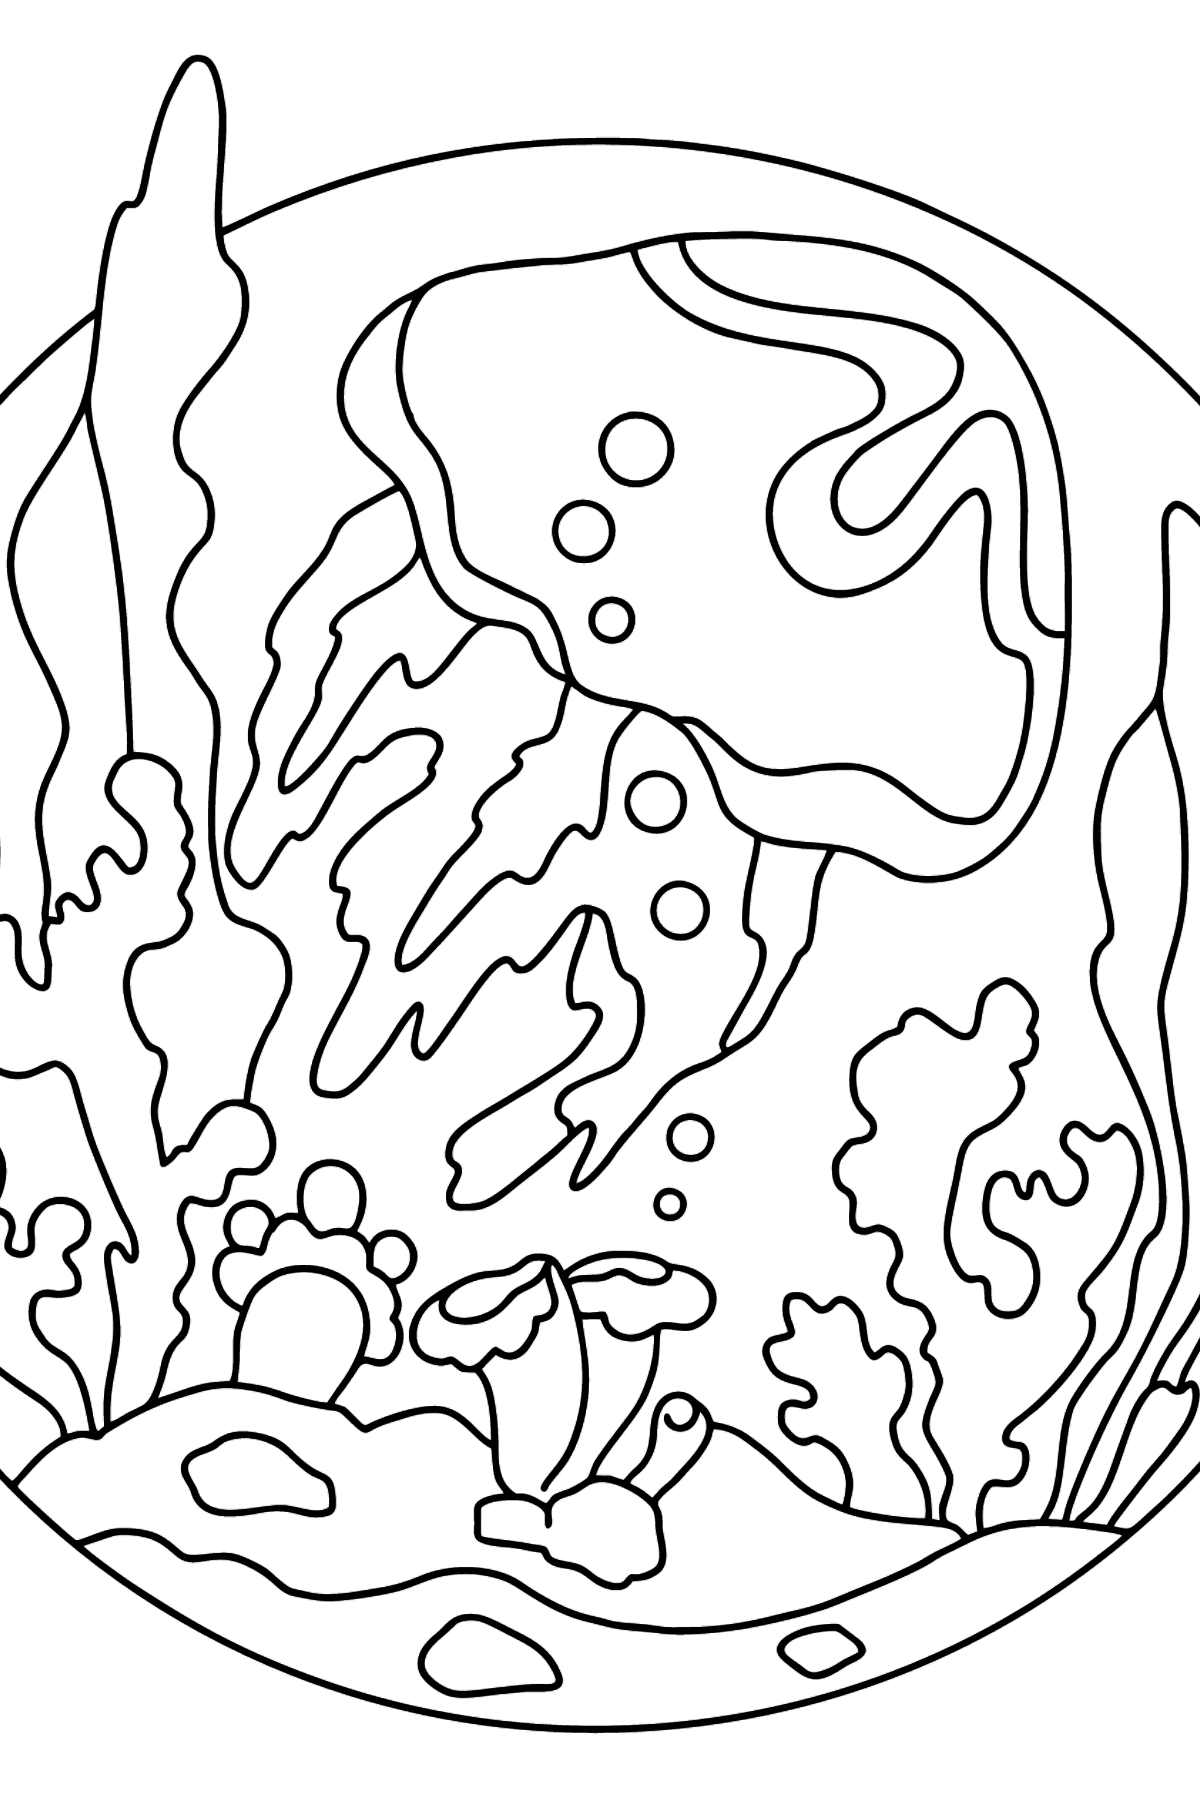 Раскраска экзотические животные - полупрозрачная медуза - Картинки для Детей